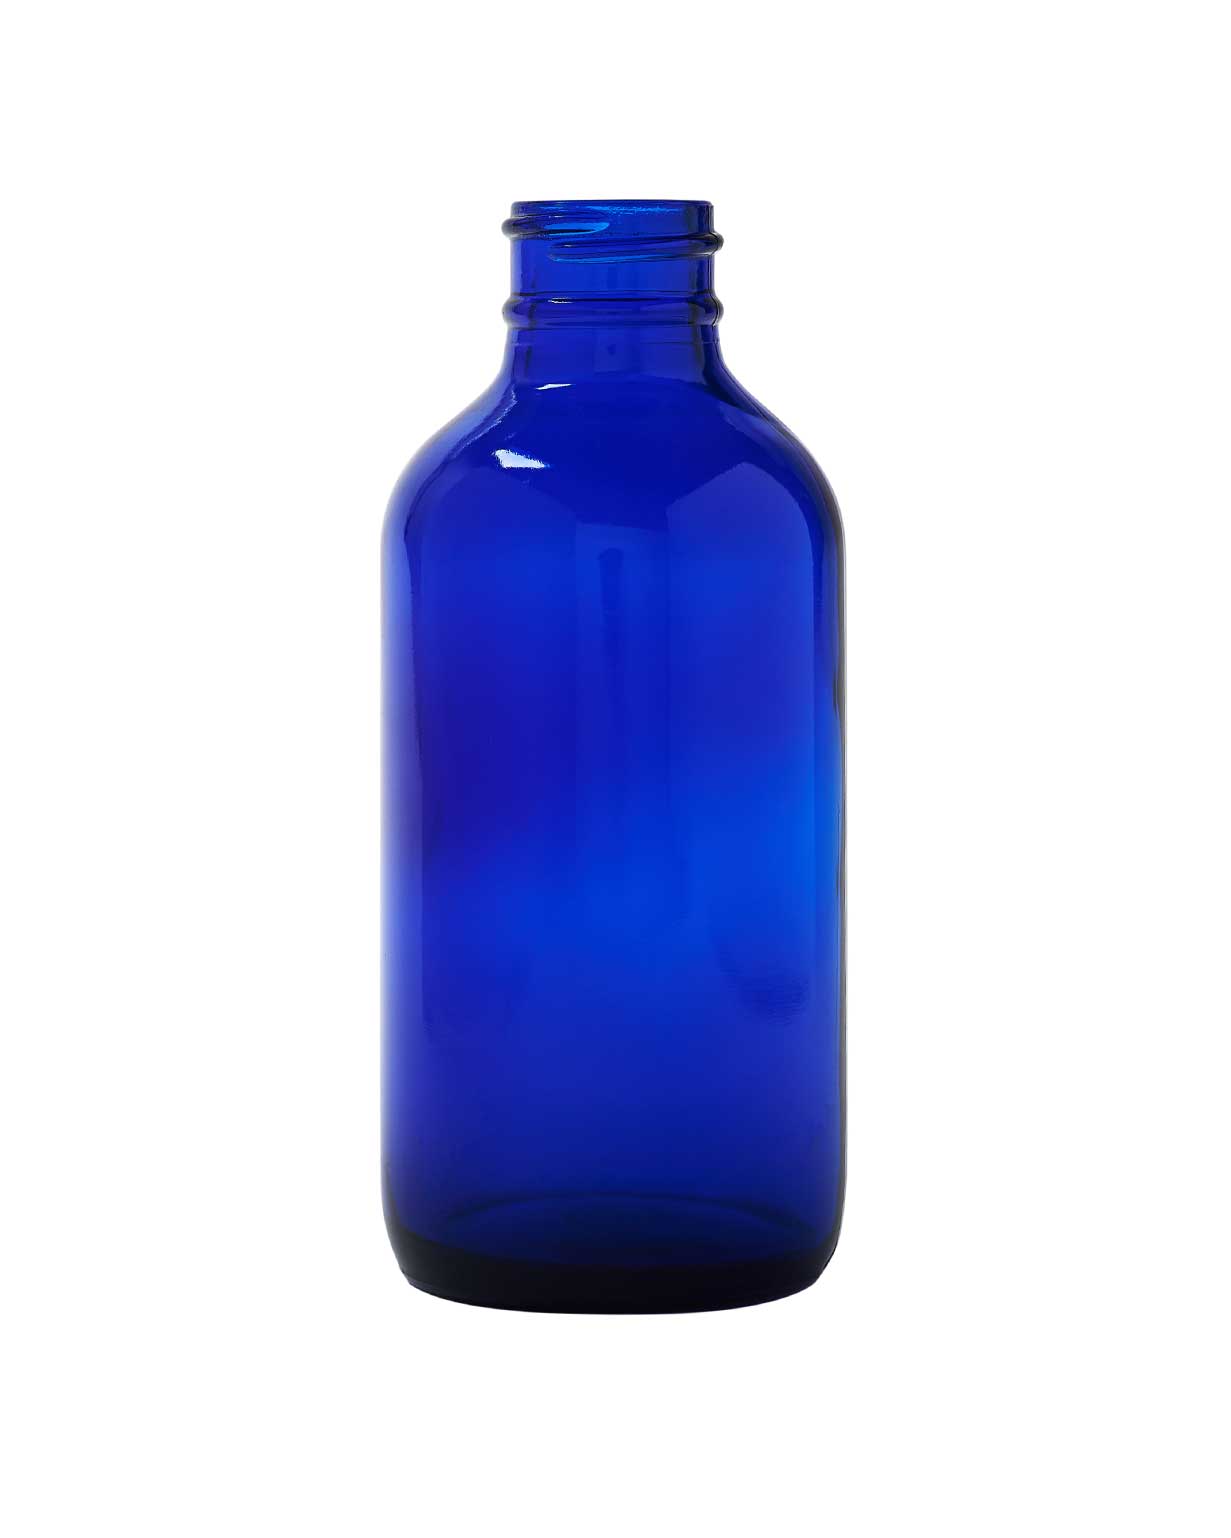 4oz 24-400 Cobalt Blue Glass Boston Round Bottle